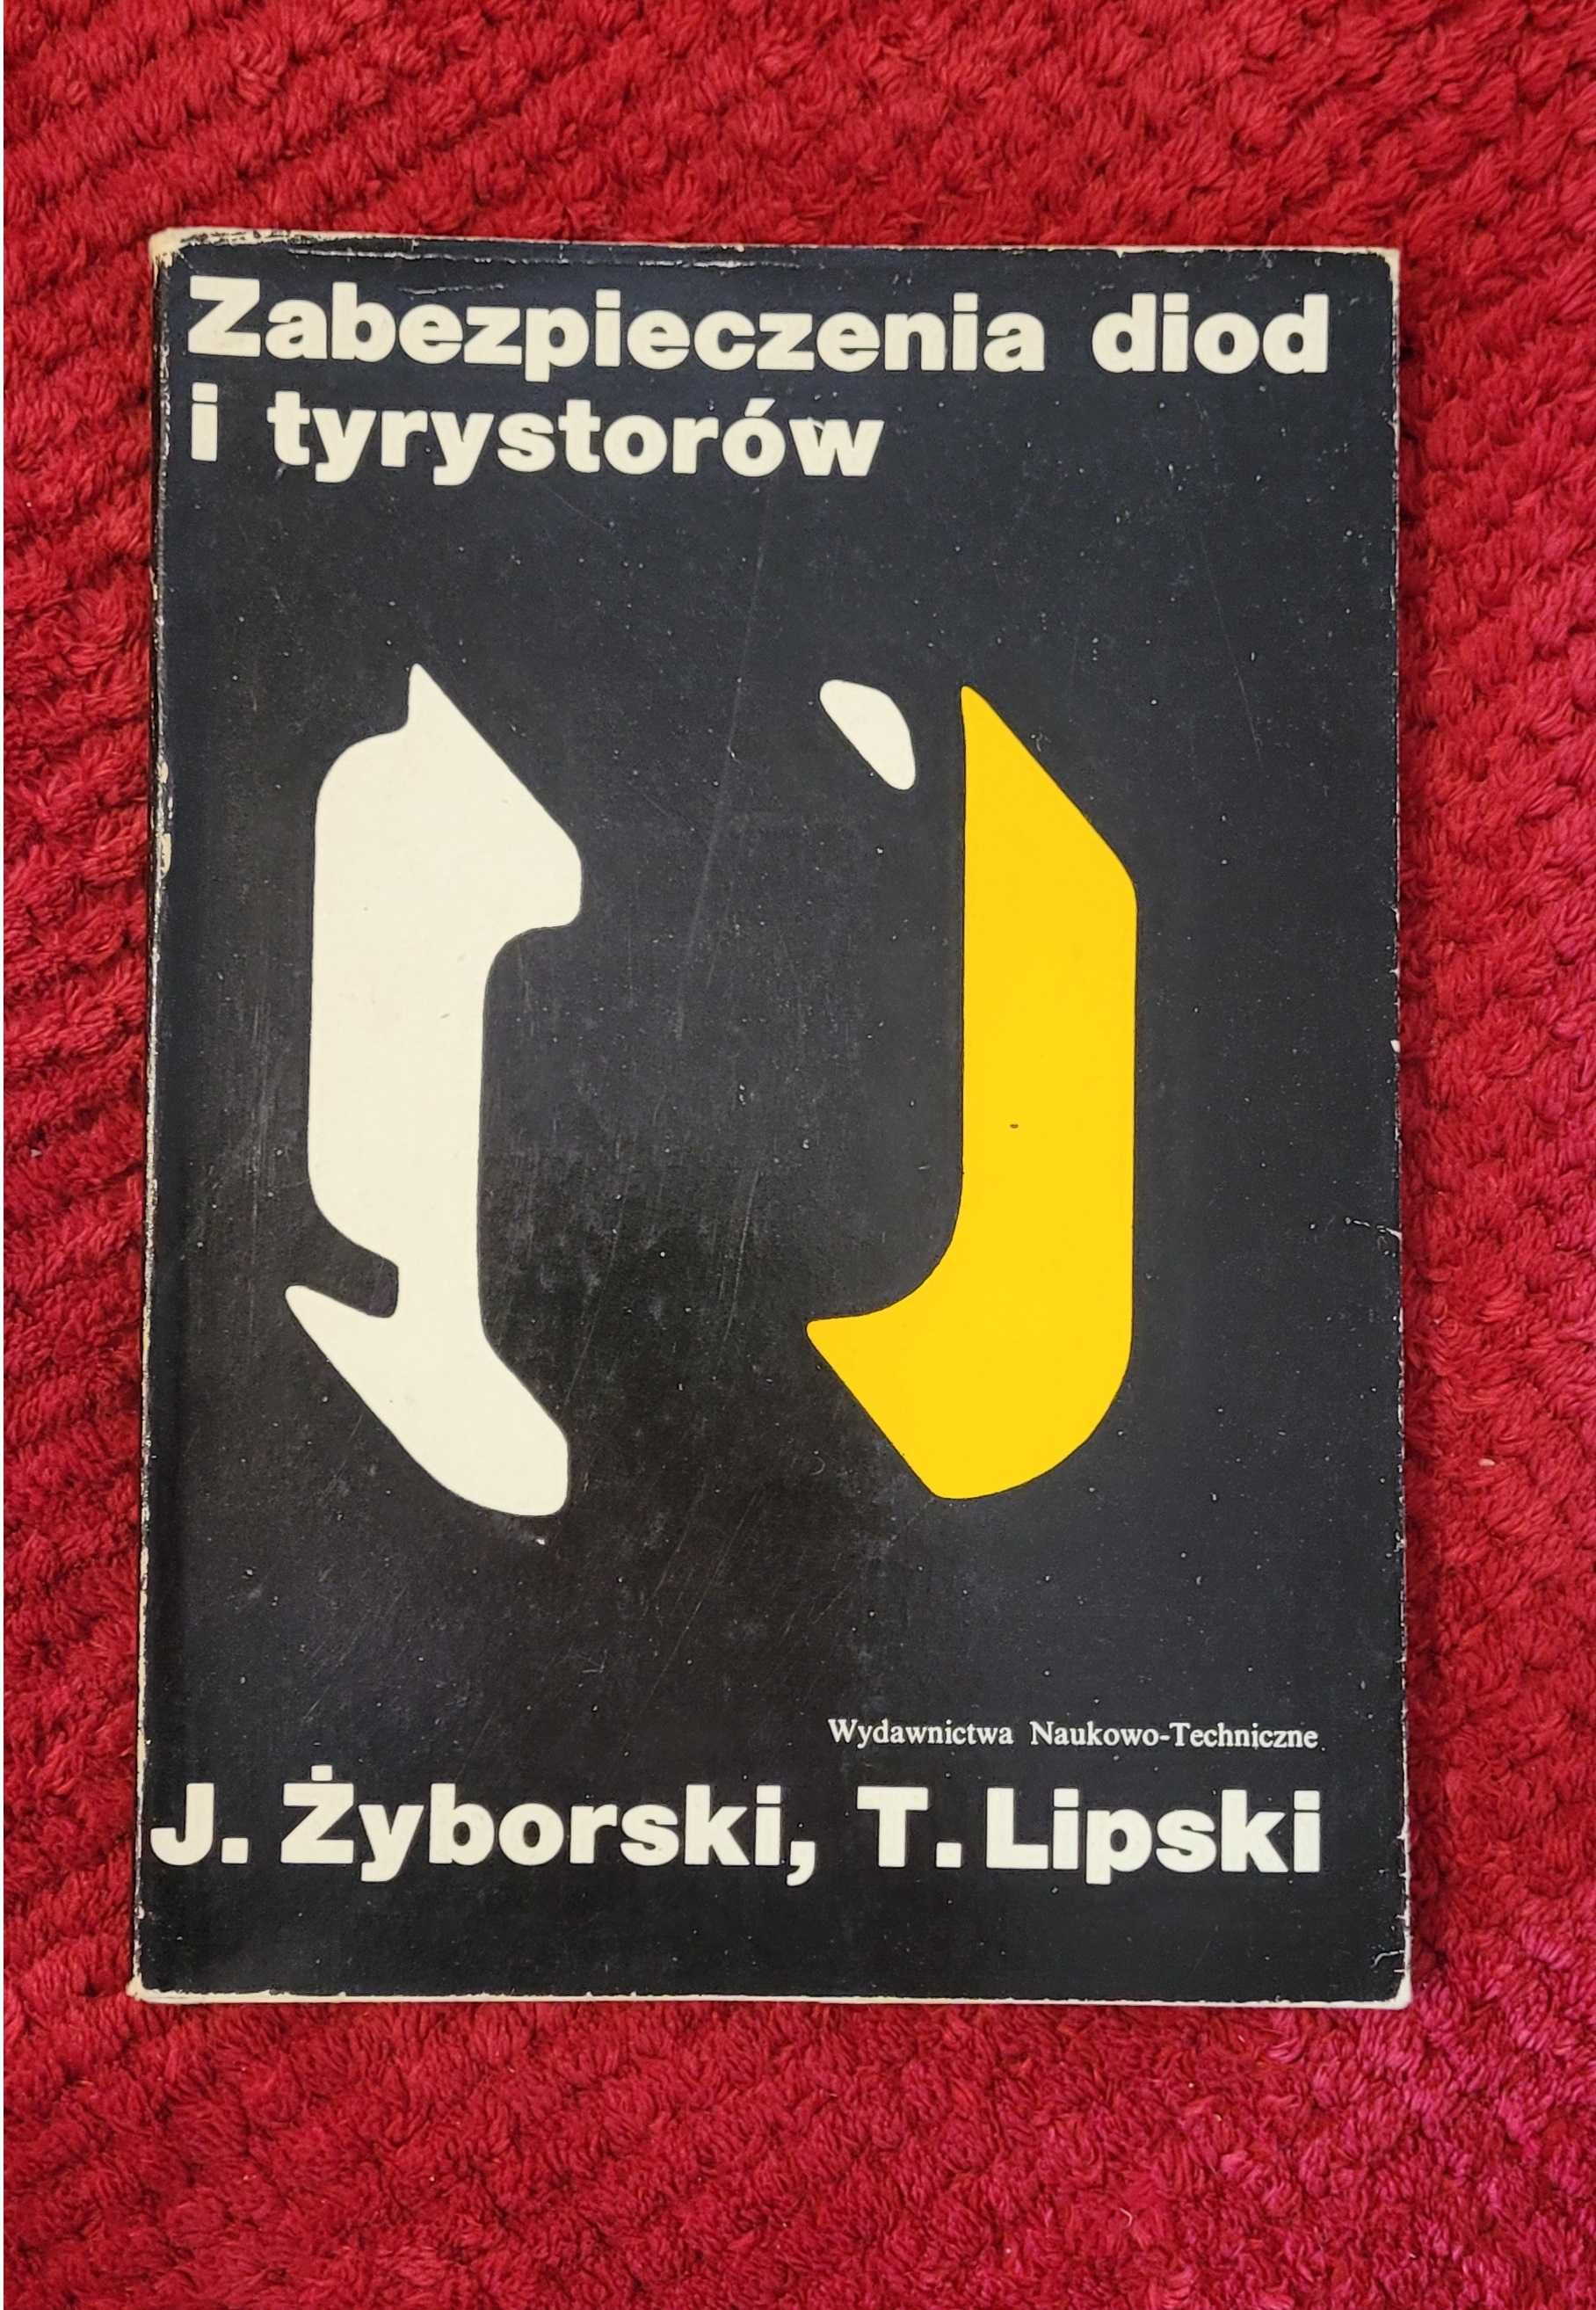 Książka "Zabezpieczenia diod i tyrystorów" J. Żyborski, T. Lipski